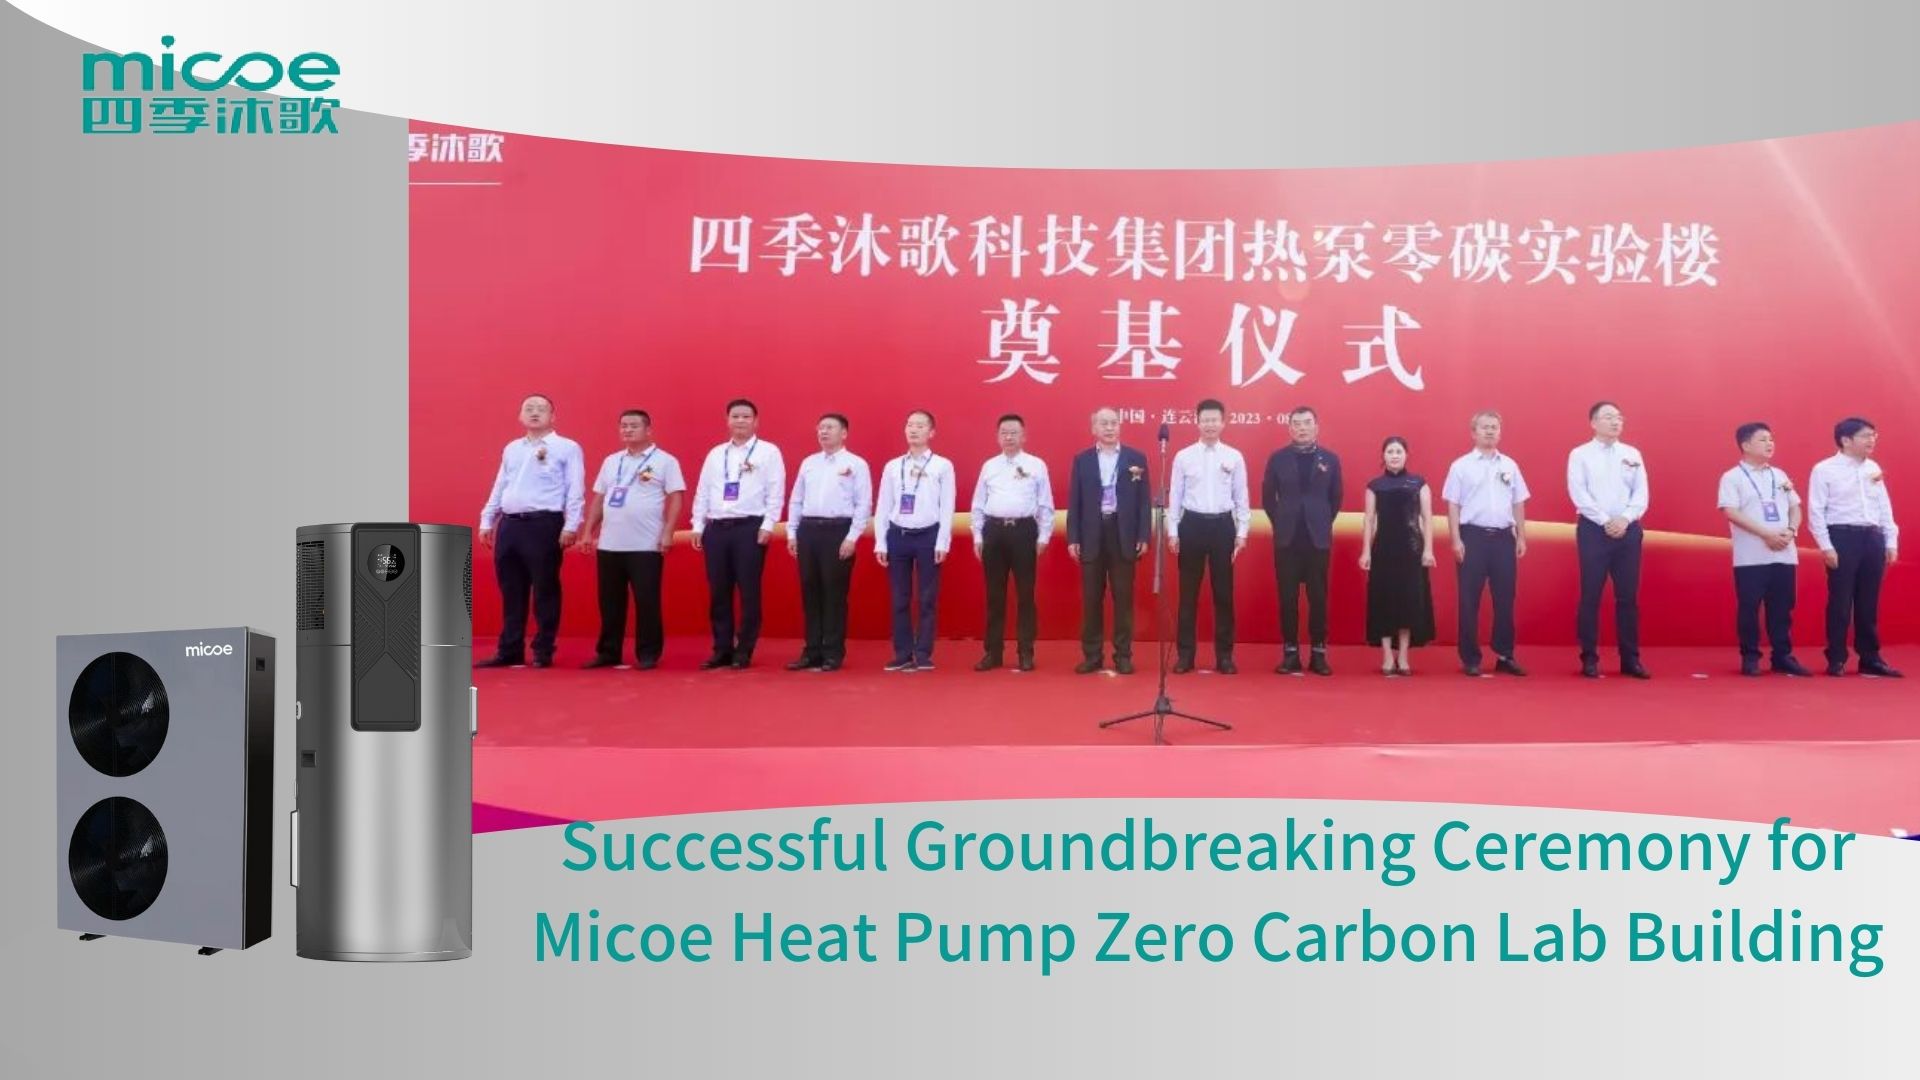 Ceremonia de inauguración exitosa para la bomba de calor Micoe Cero Carbon Lab Building